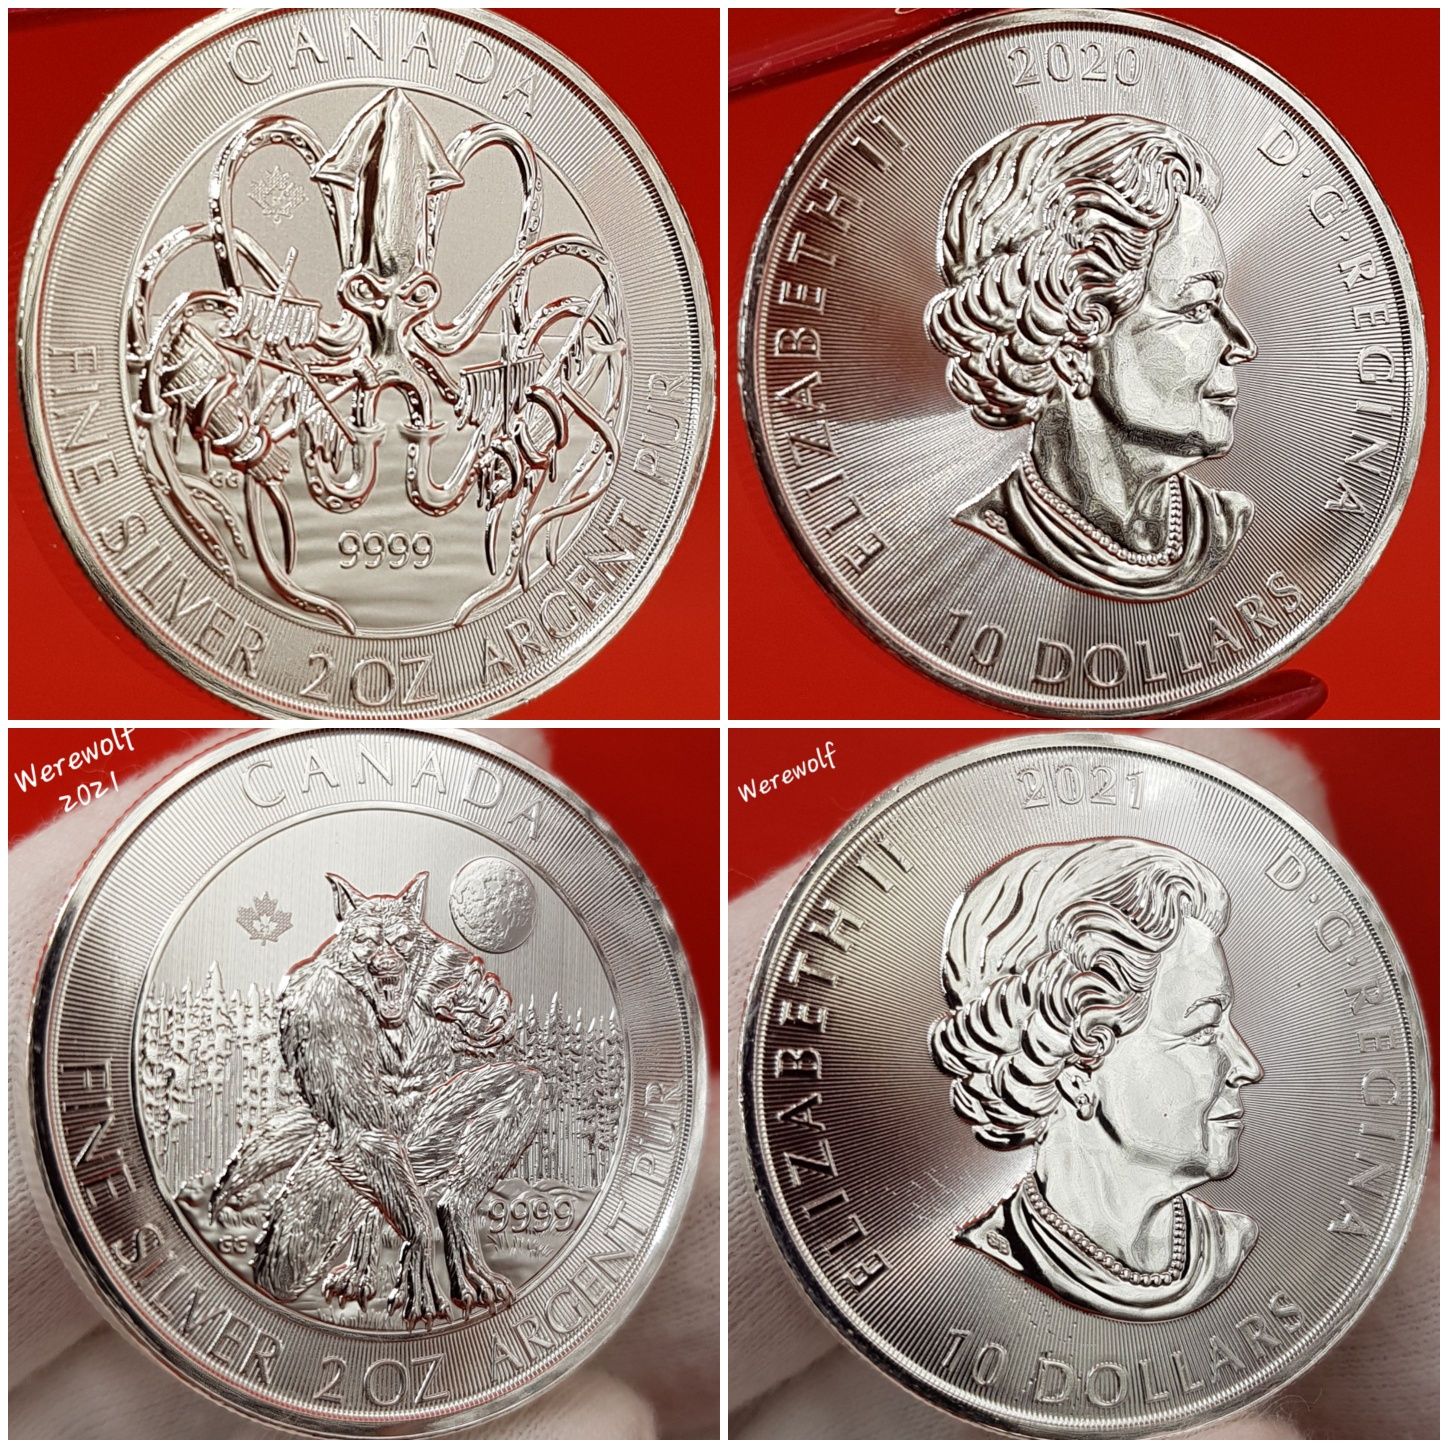 Canada Royal Mint RCM Vircolacul Superman monede lingou argint 999